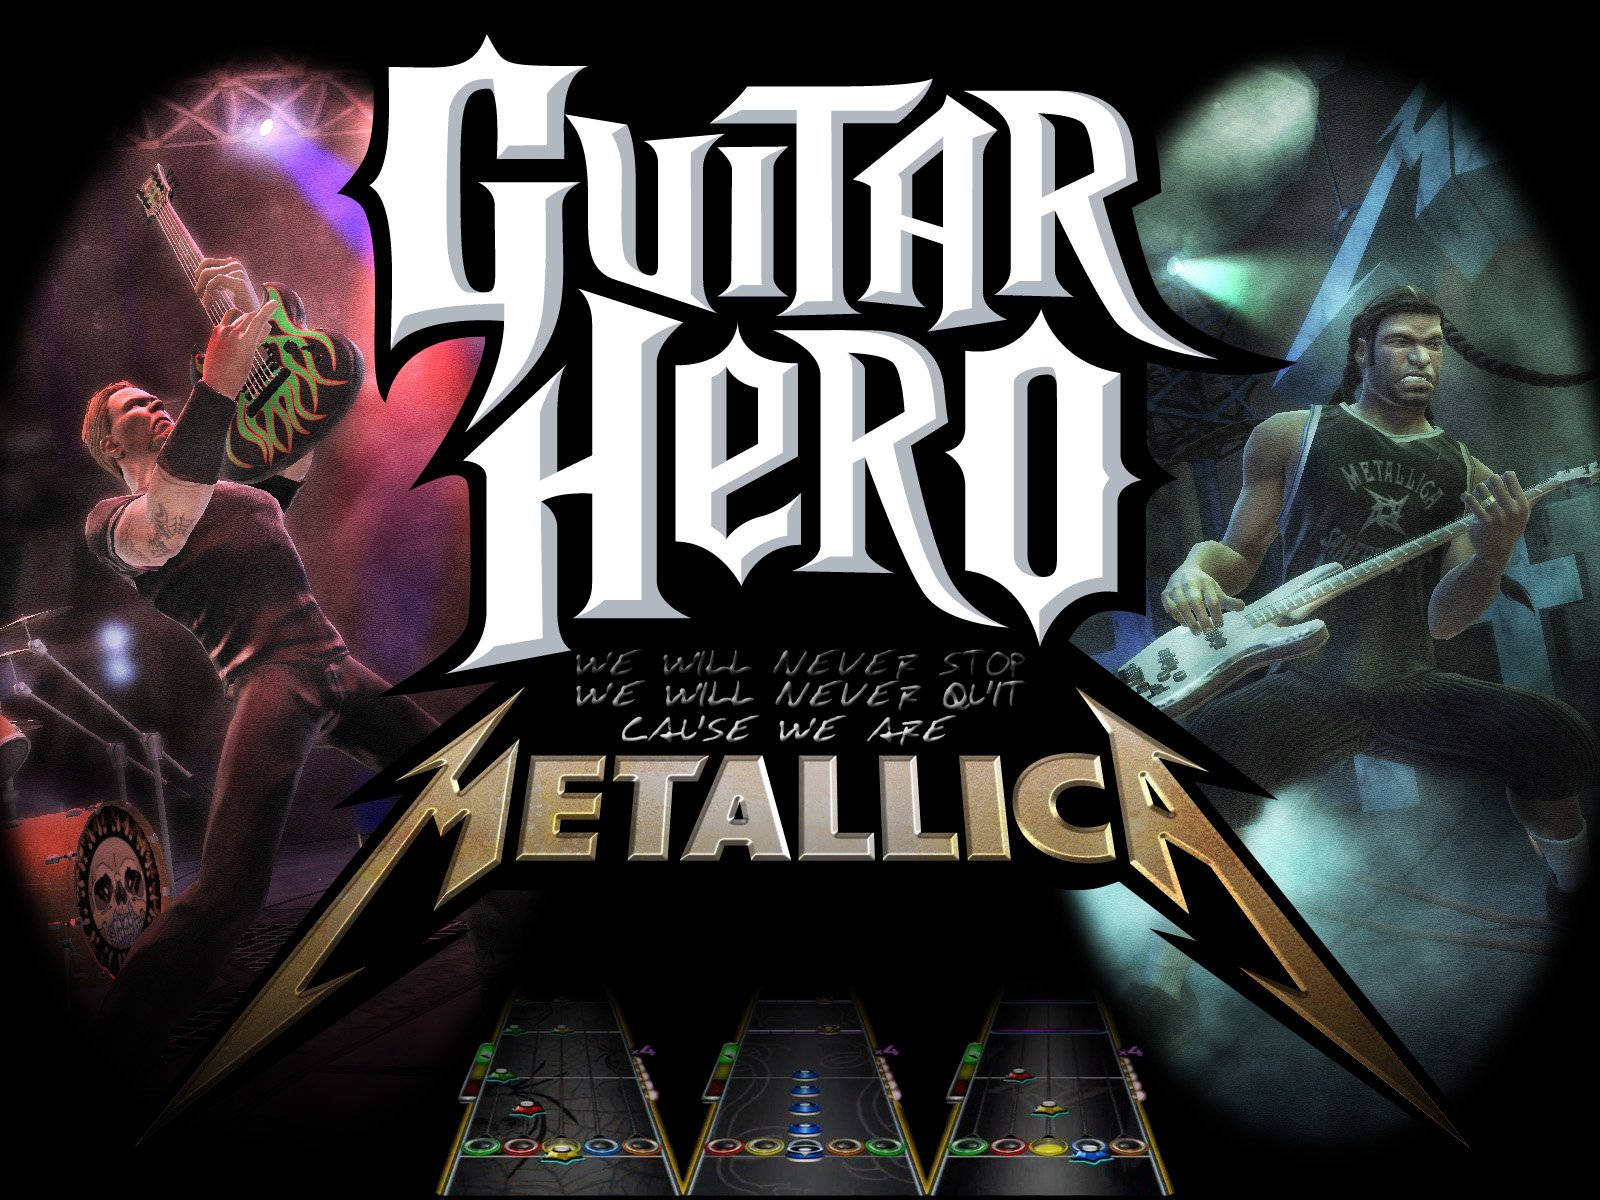 Guitar Hero Metallica Digital Poster Wallpaper